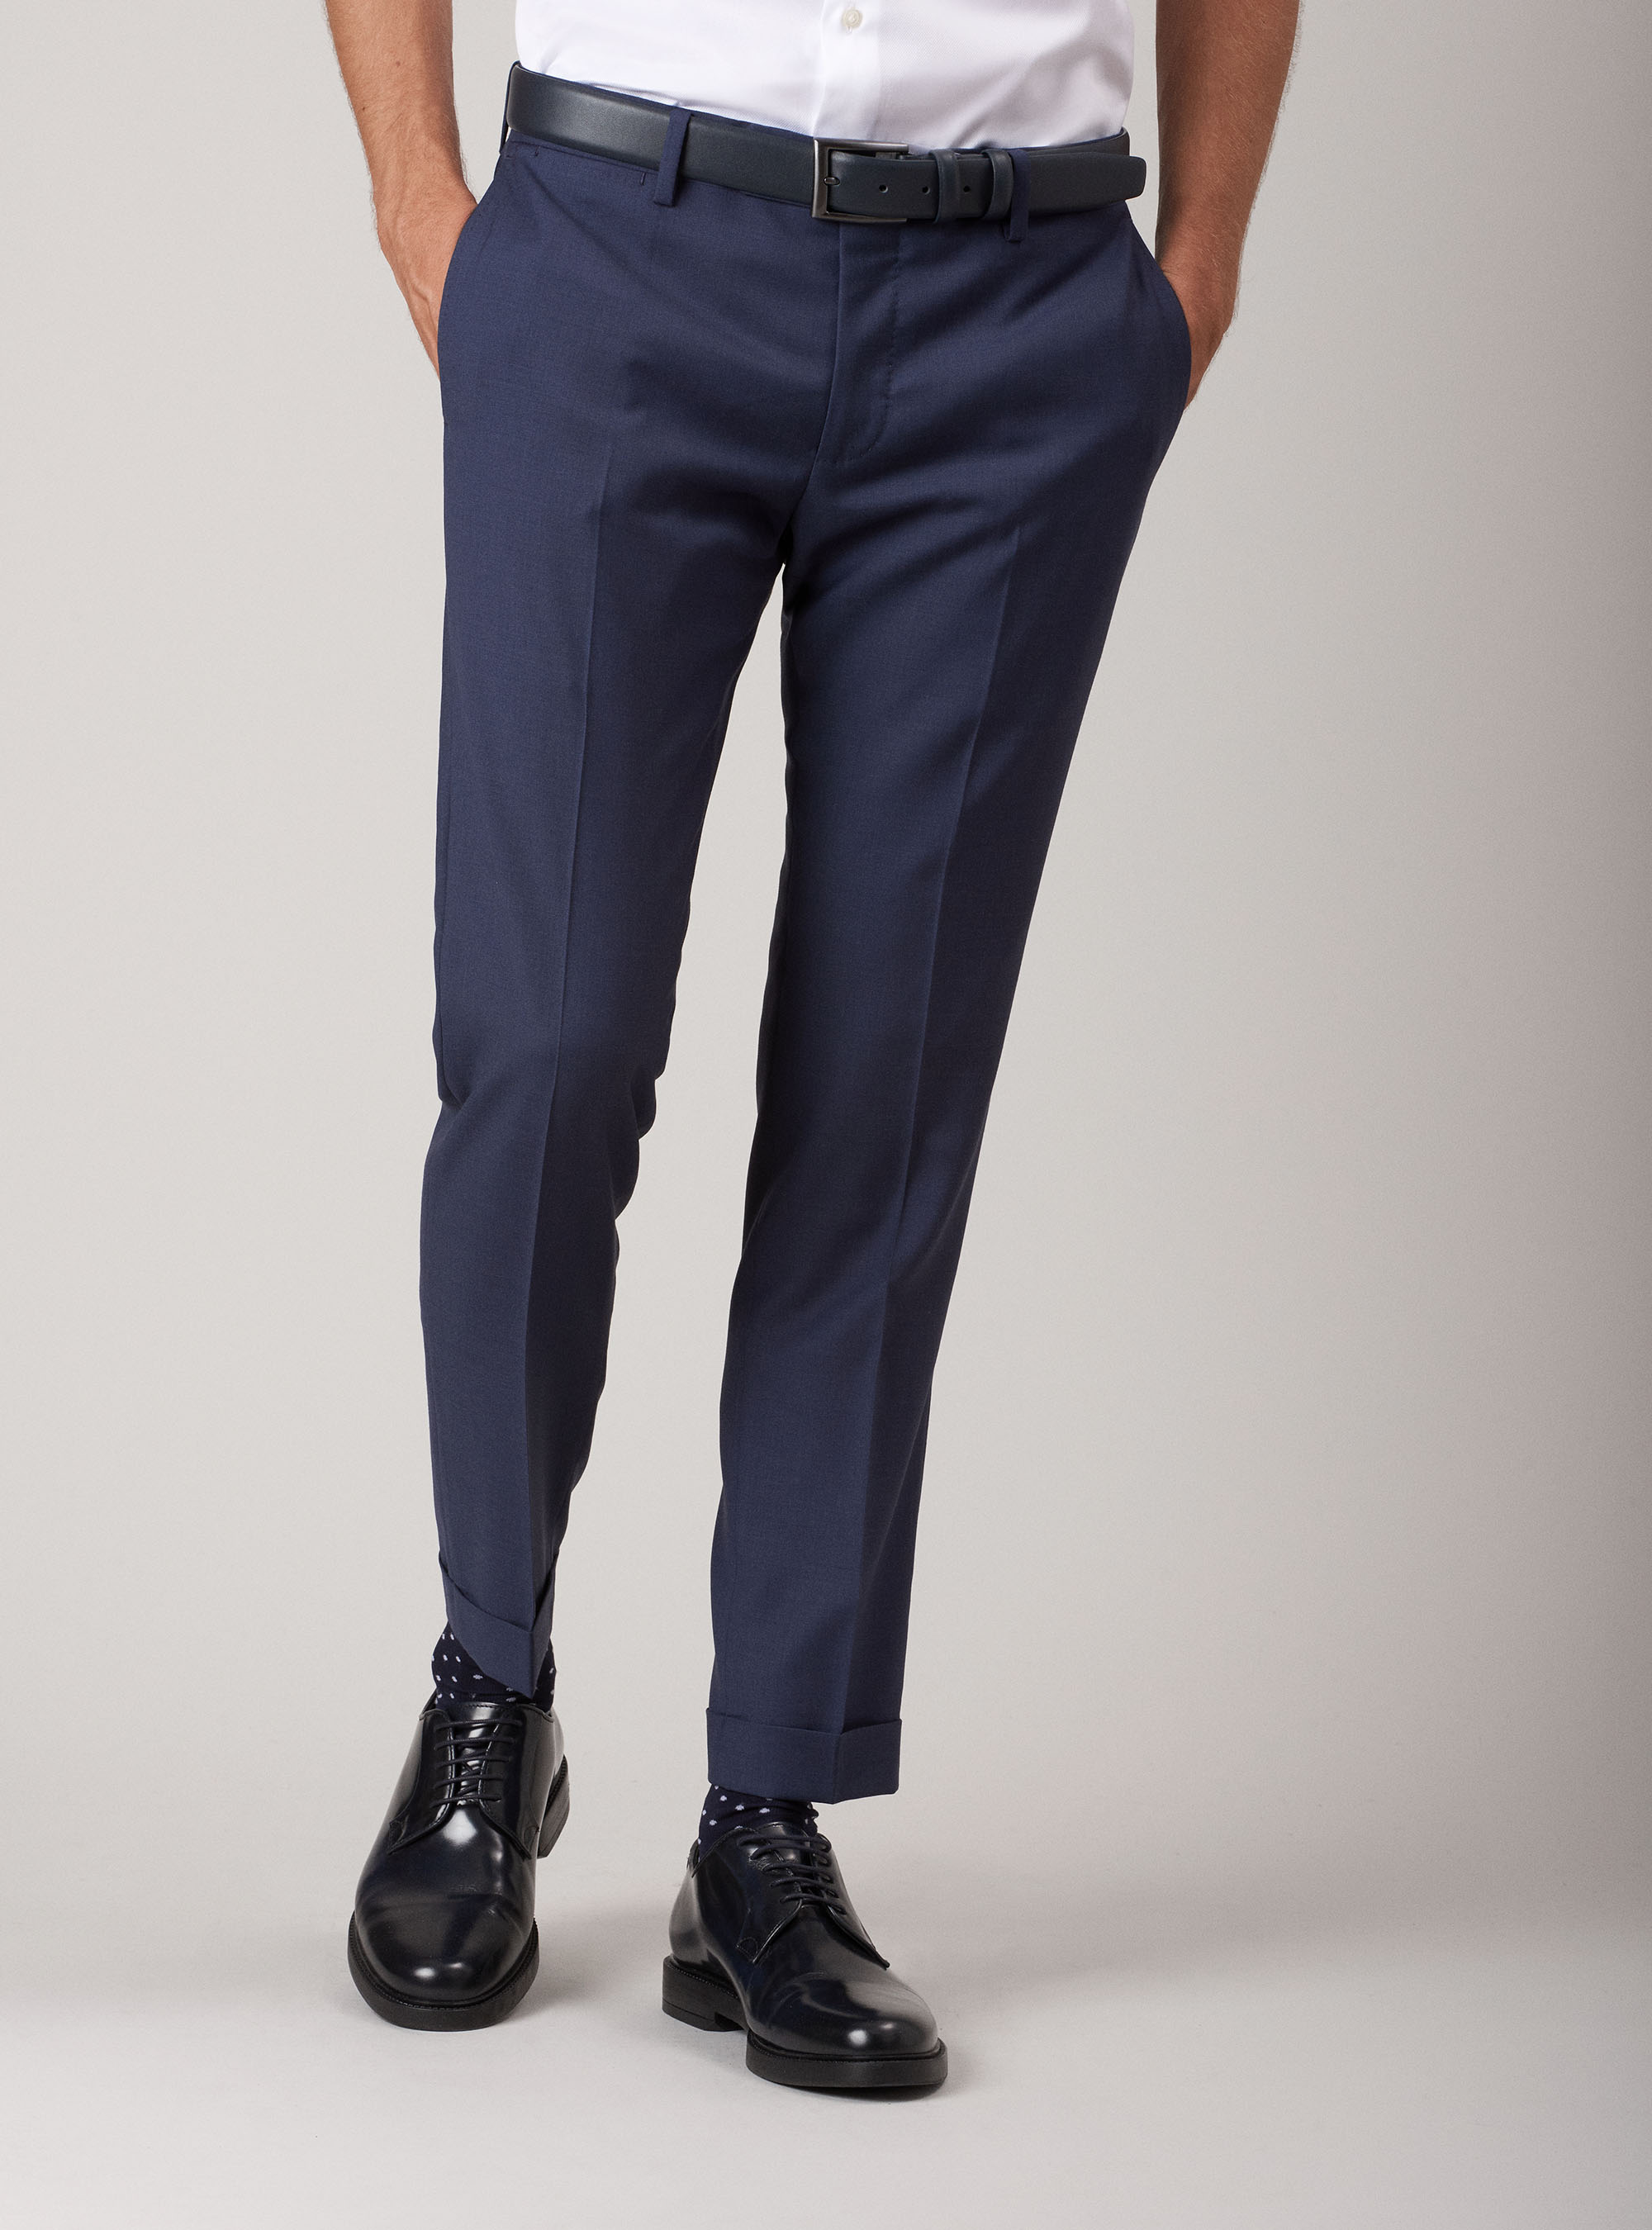 Gutteridge - Pantaloni per abito in fresco lana super fine 120's, Unisex, Inchiostro, Taglia: 44